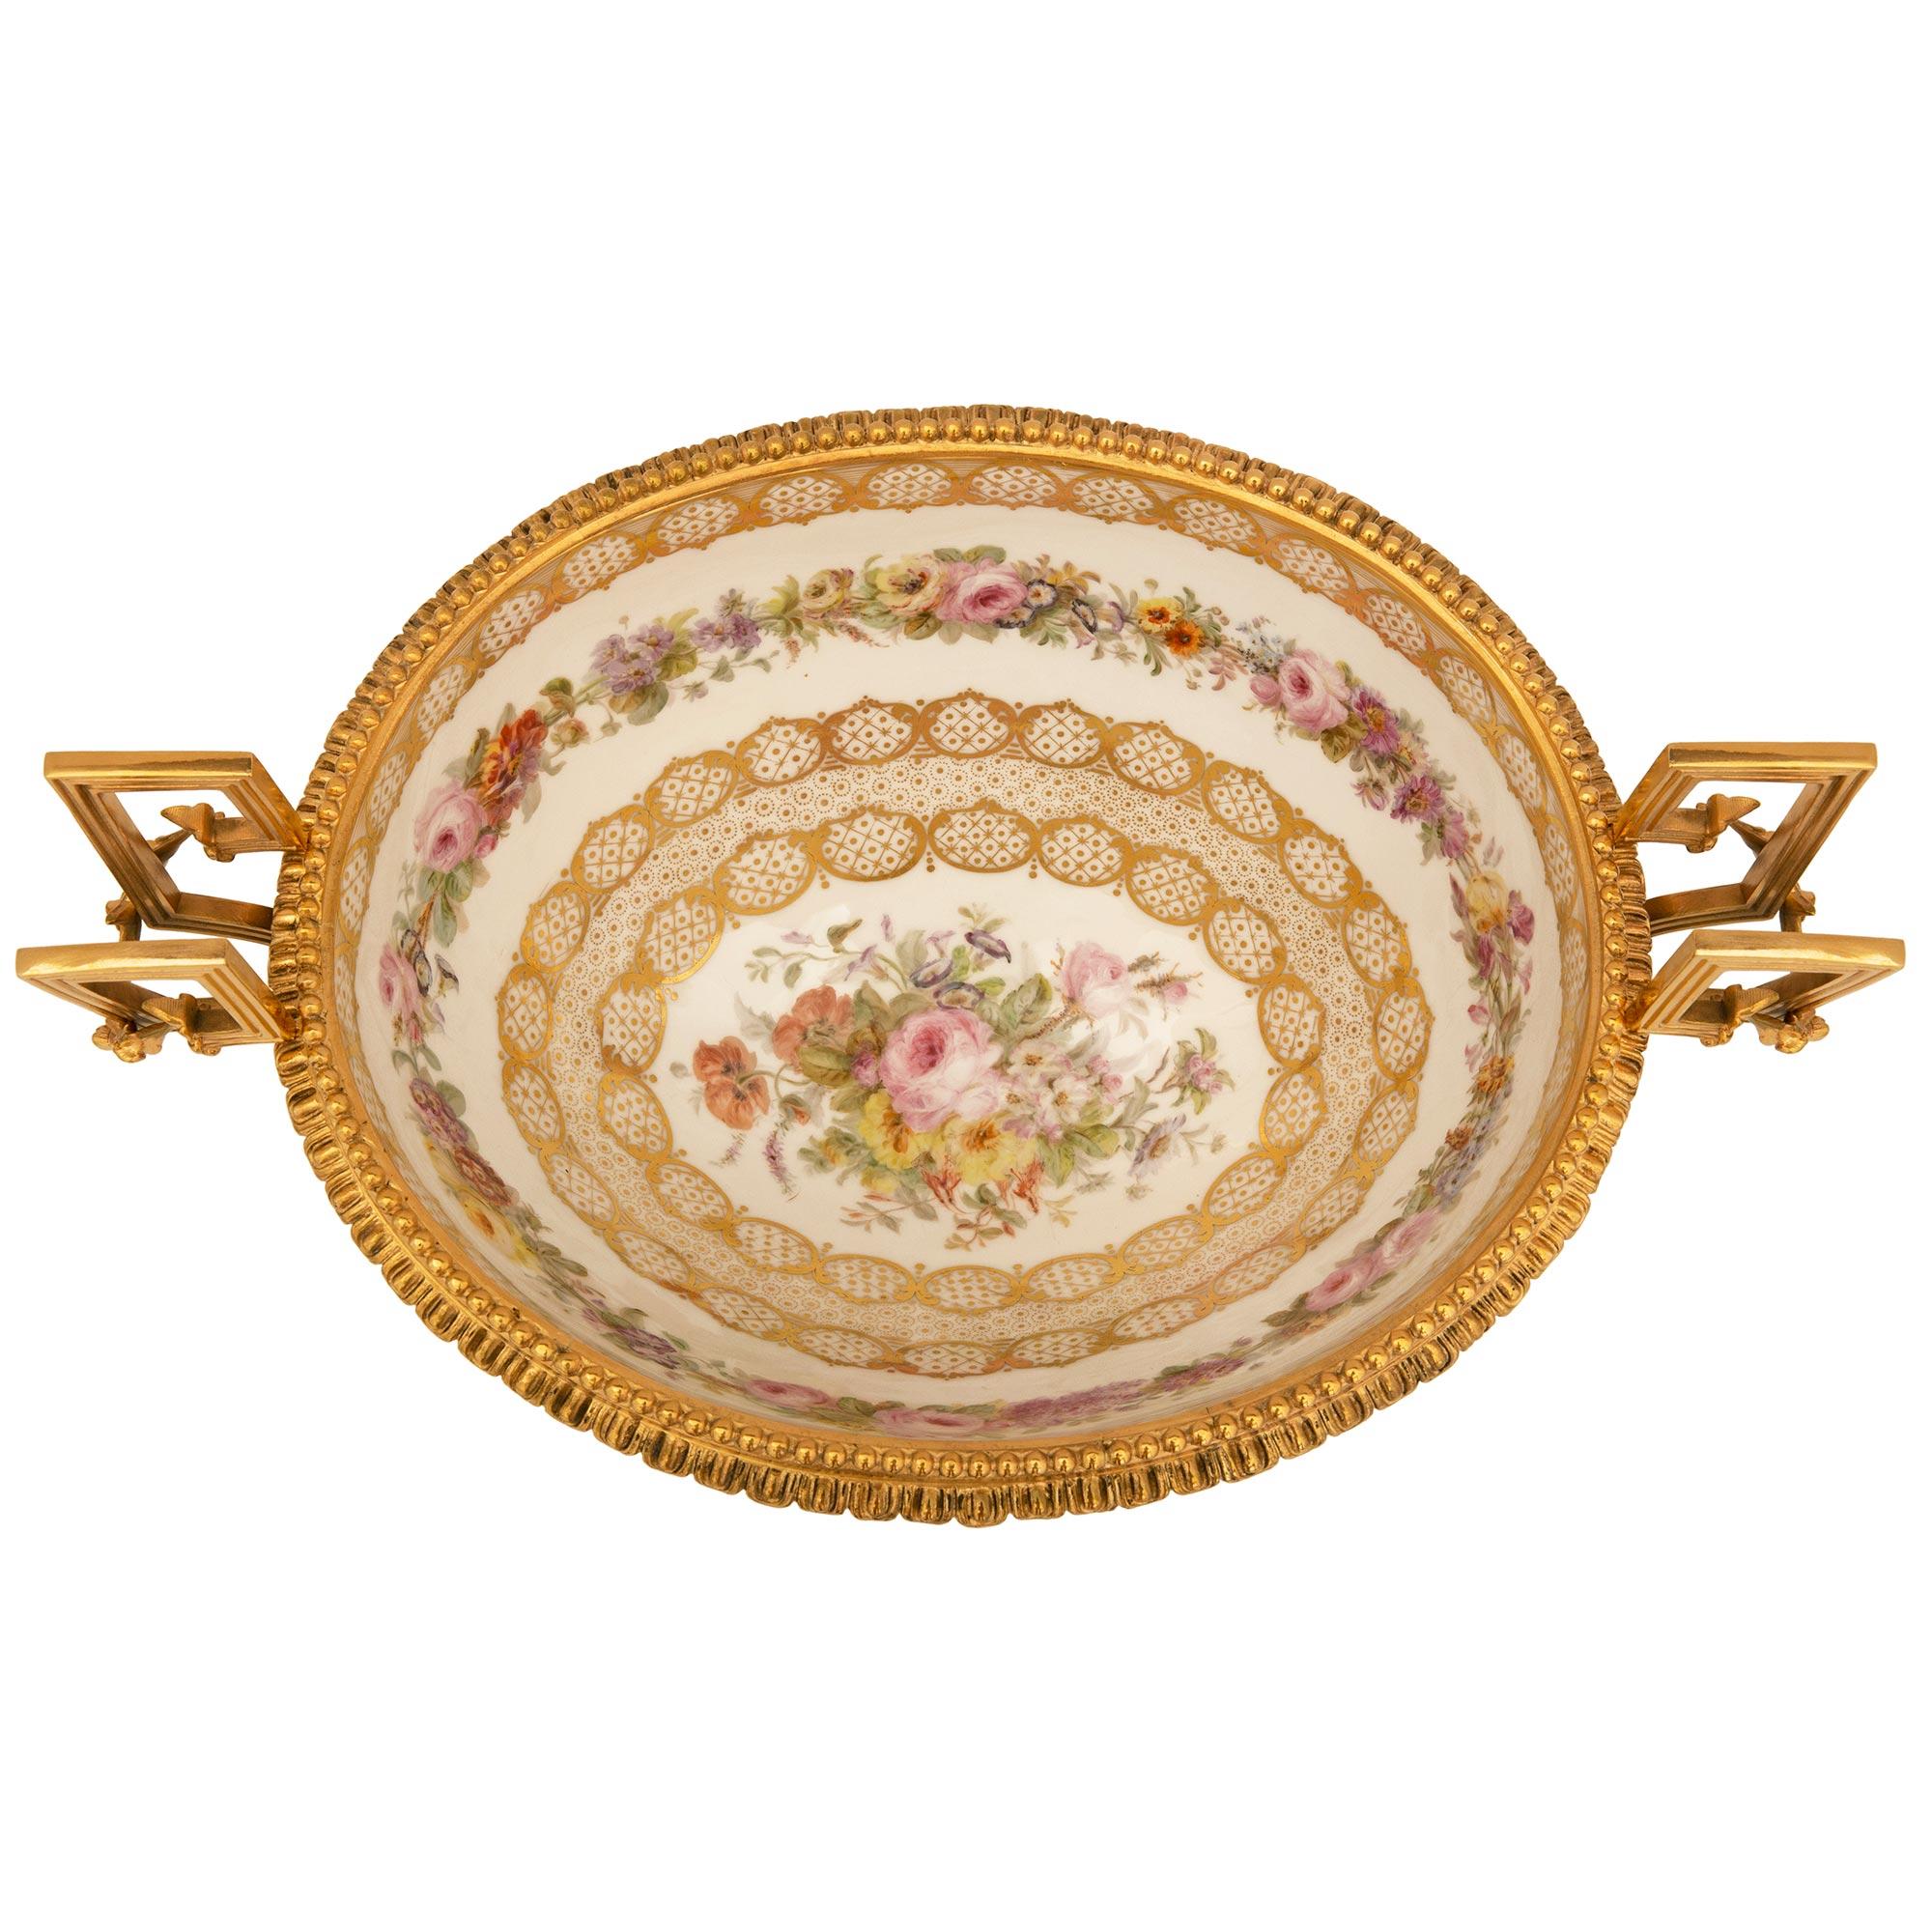 Eine atemberaubende und sehr hohe Qualität Französisch 19. Jahrhundert Louis XVI St. Ormolu und Sèvres Porzellan Tafelaufsatz. Das Mittelstück steht auf einem eleganten Ormolu-Sockel mit feinen Blattfüßen, schönen, reich ziselierten, herumtollenden